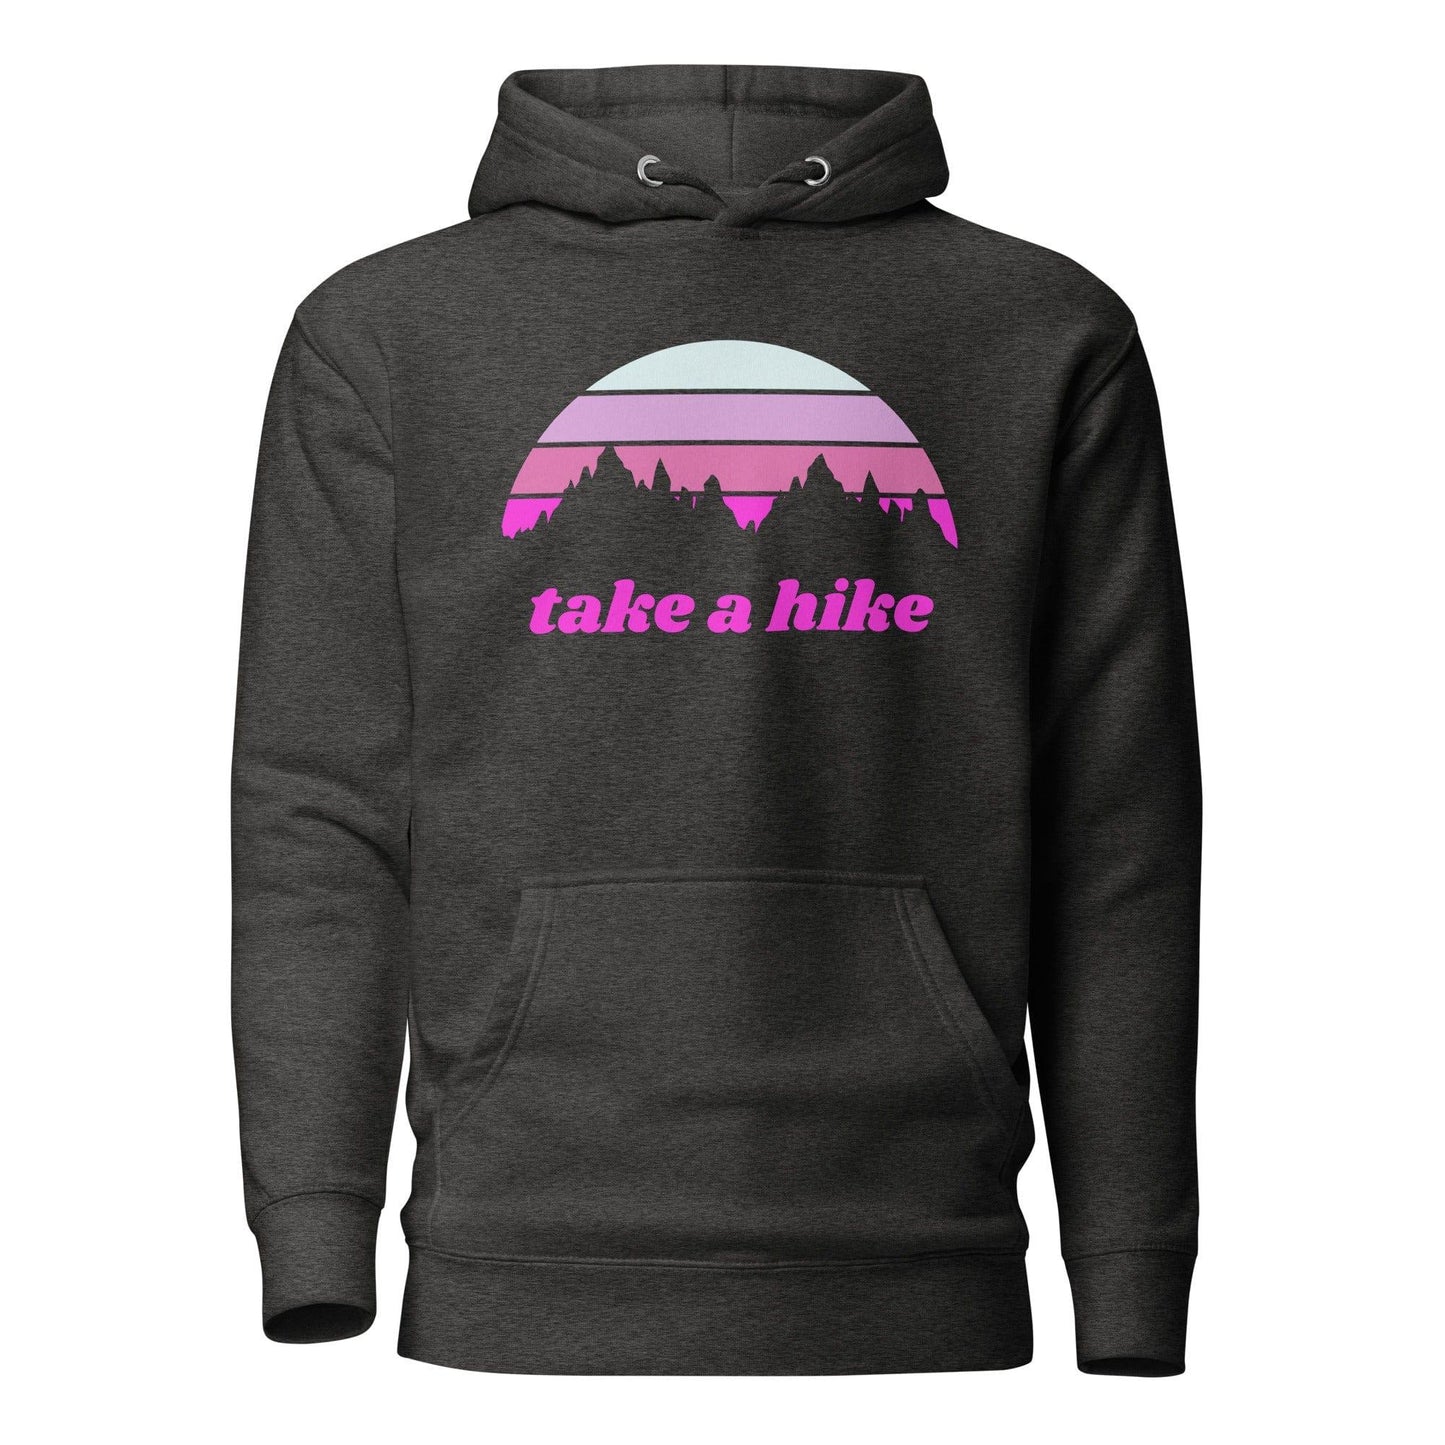 Take a Hike Hoodie - Adventure Threads Company